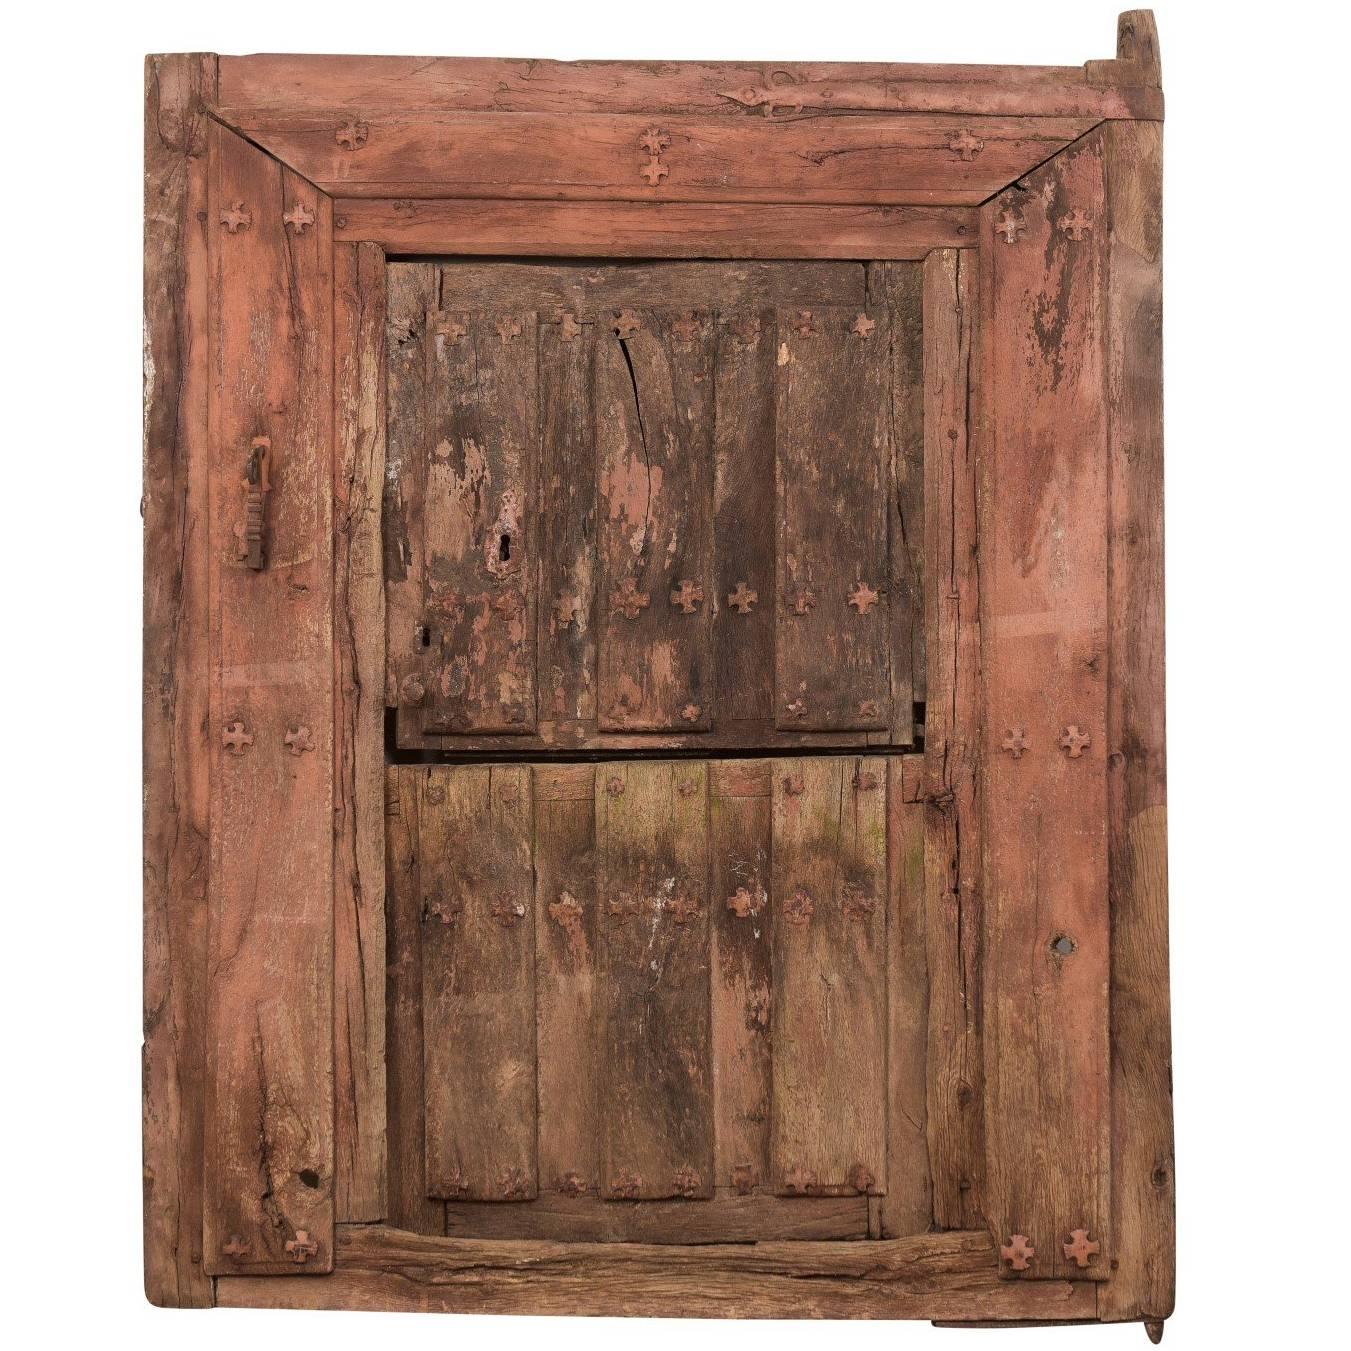 Porte fendu en bois et en fer espagnol du 18ème siècle dans son boîtier d'origine